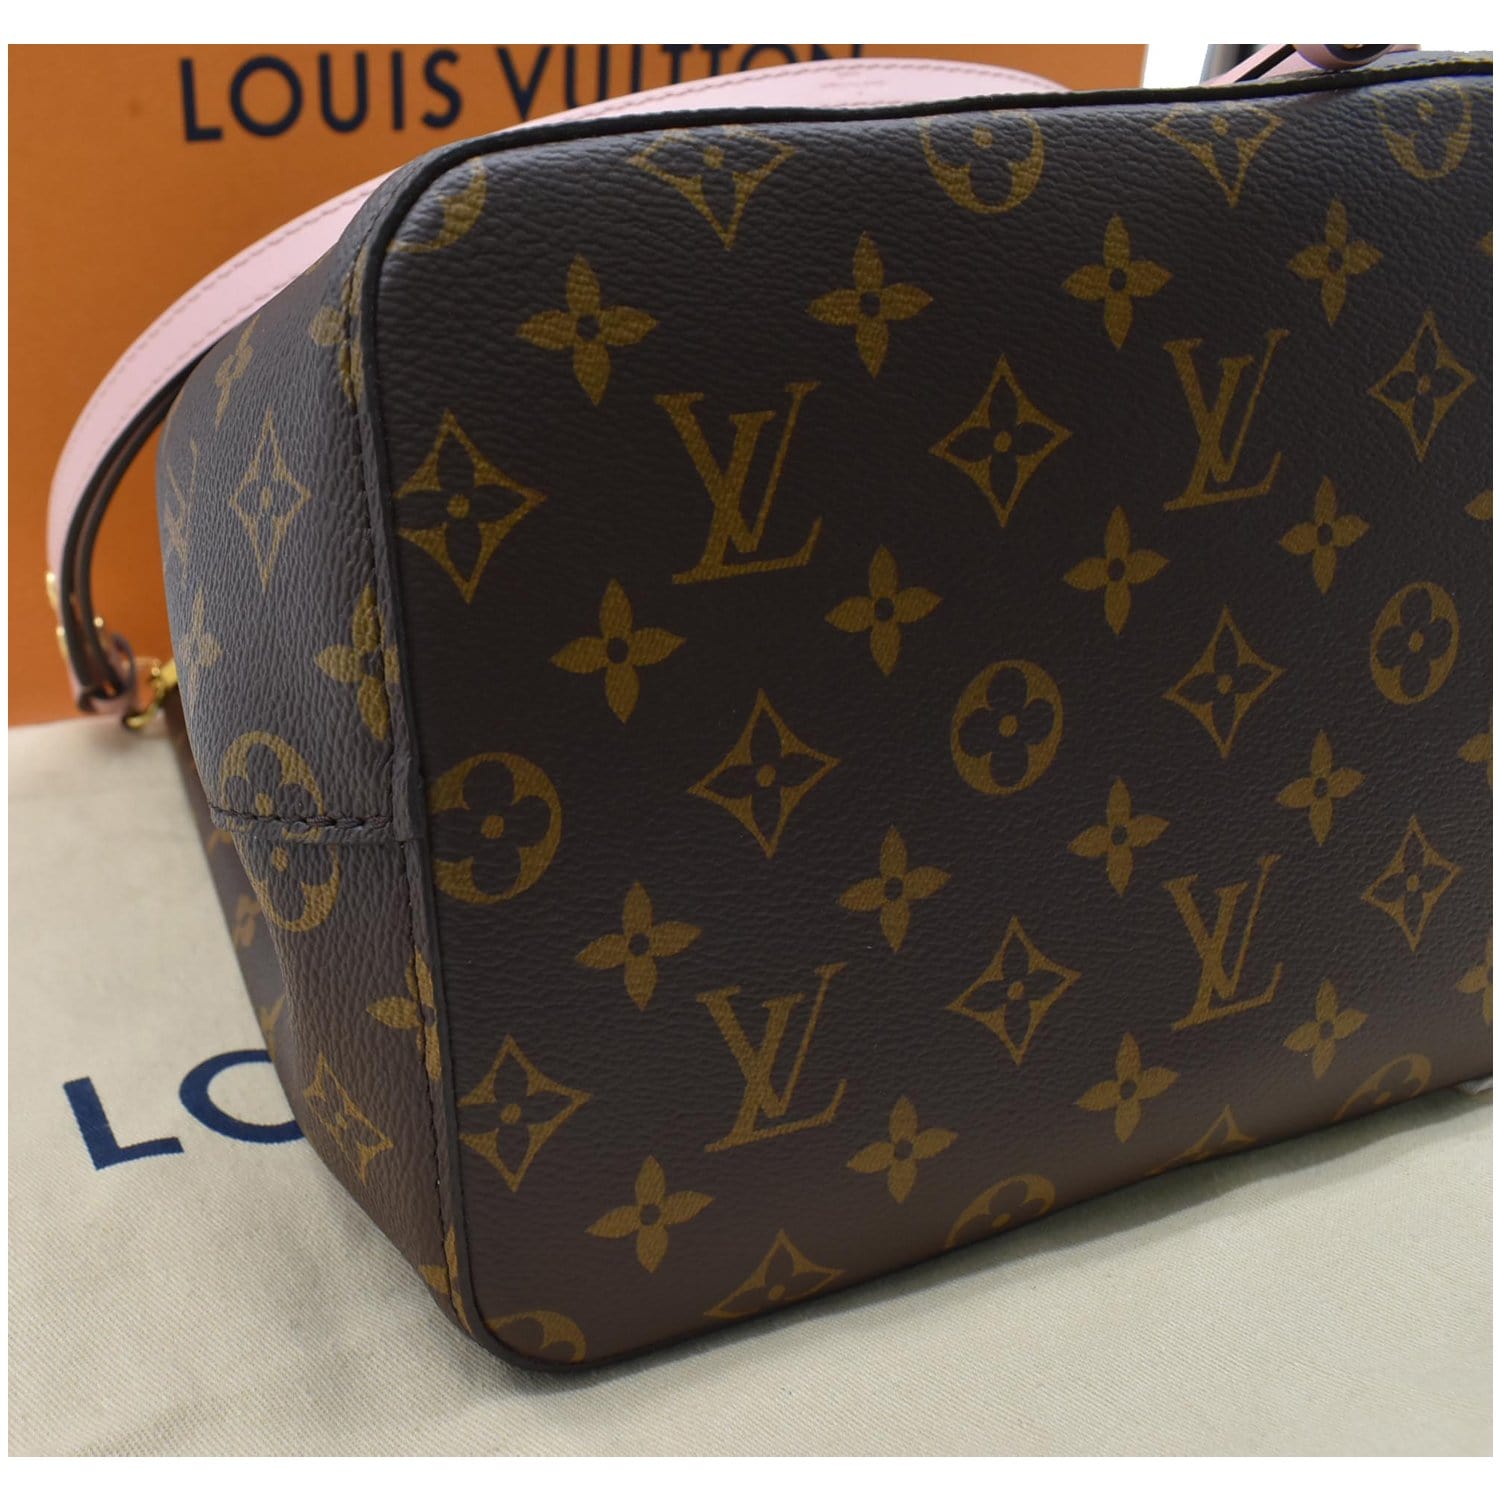 Authentic Louis Vuitton Damier Ebene NeoNoe MM Shoulder Bag – Italy Station